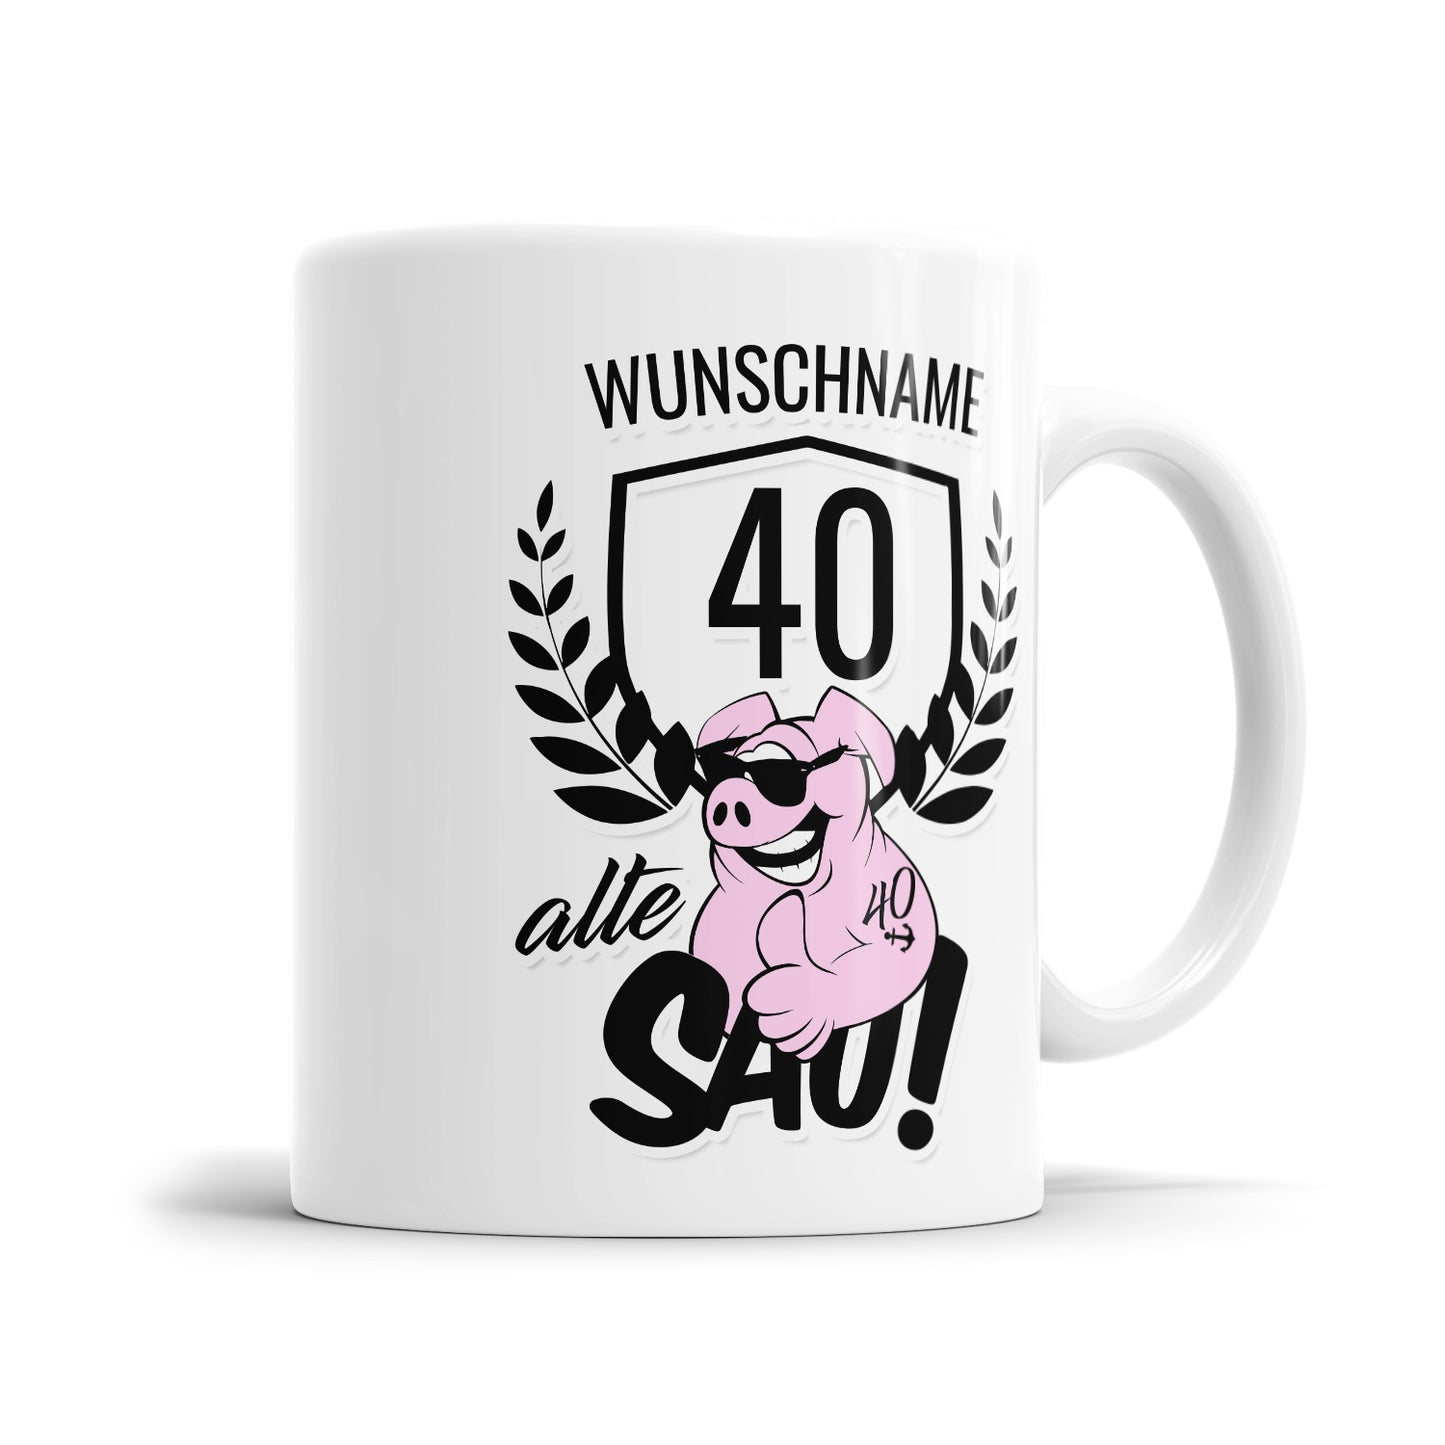 Alte Sau 40 personalisiert mit Namen - 40 Geburtstag Tasse